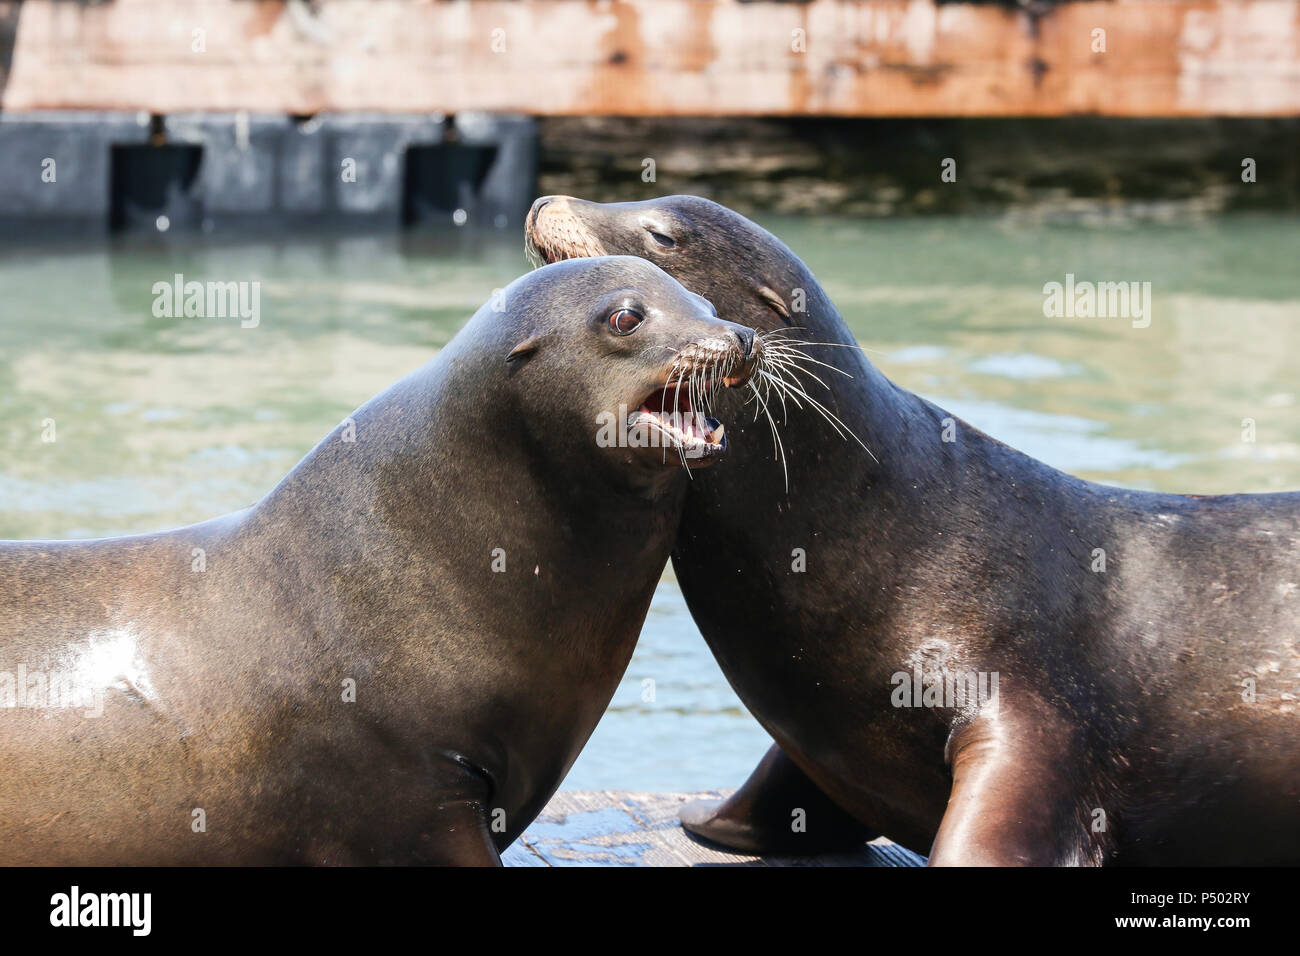 Deux Lions de mer se battre sur un radeau pour le classement. Les Lions de mer à San Francisco Fisherman's Wharf Pier 39 est devenu une attraction touristique majeure. Banque D'Images